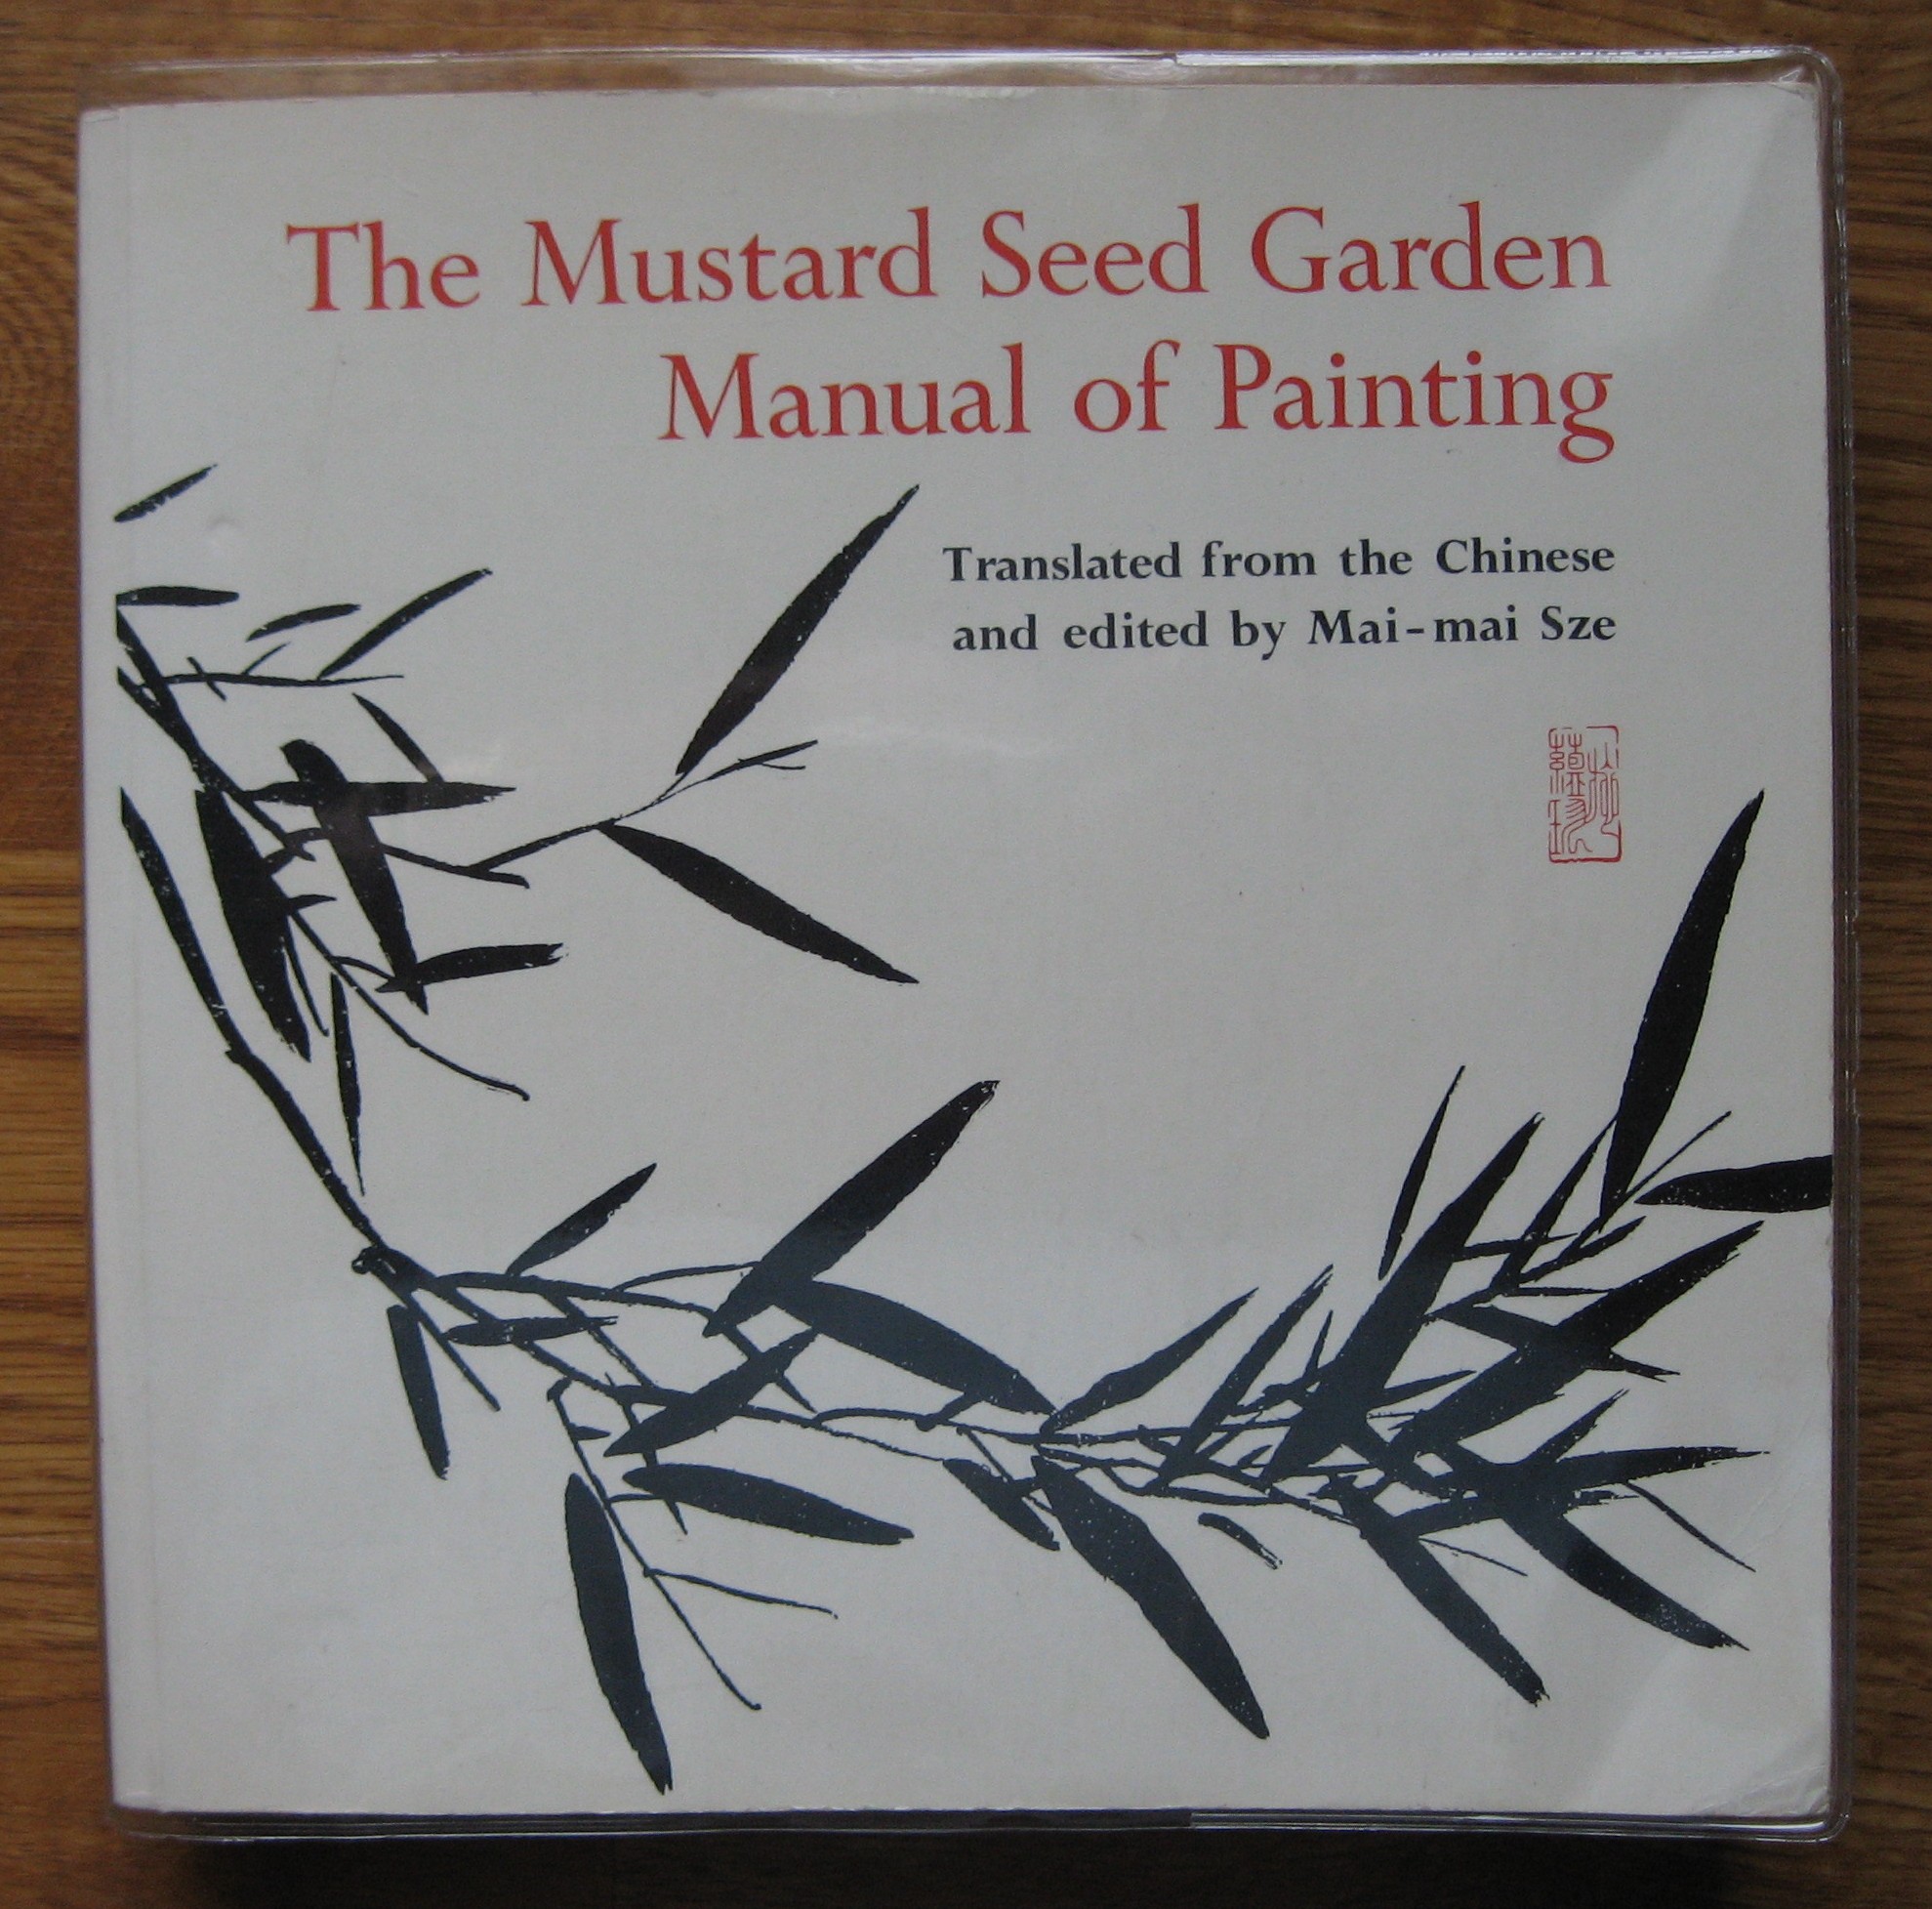 The Mustard Seed Garden